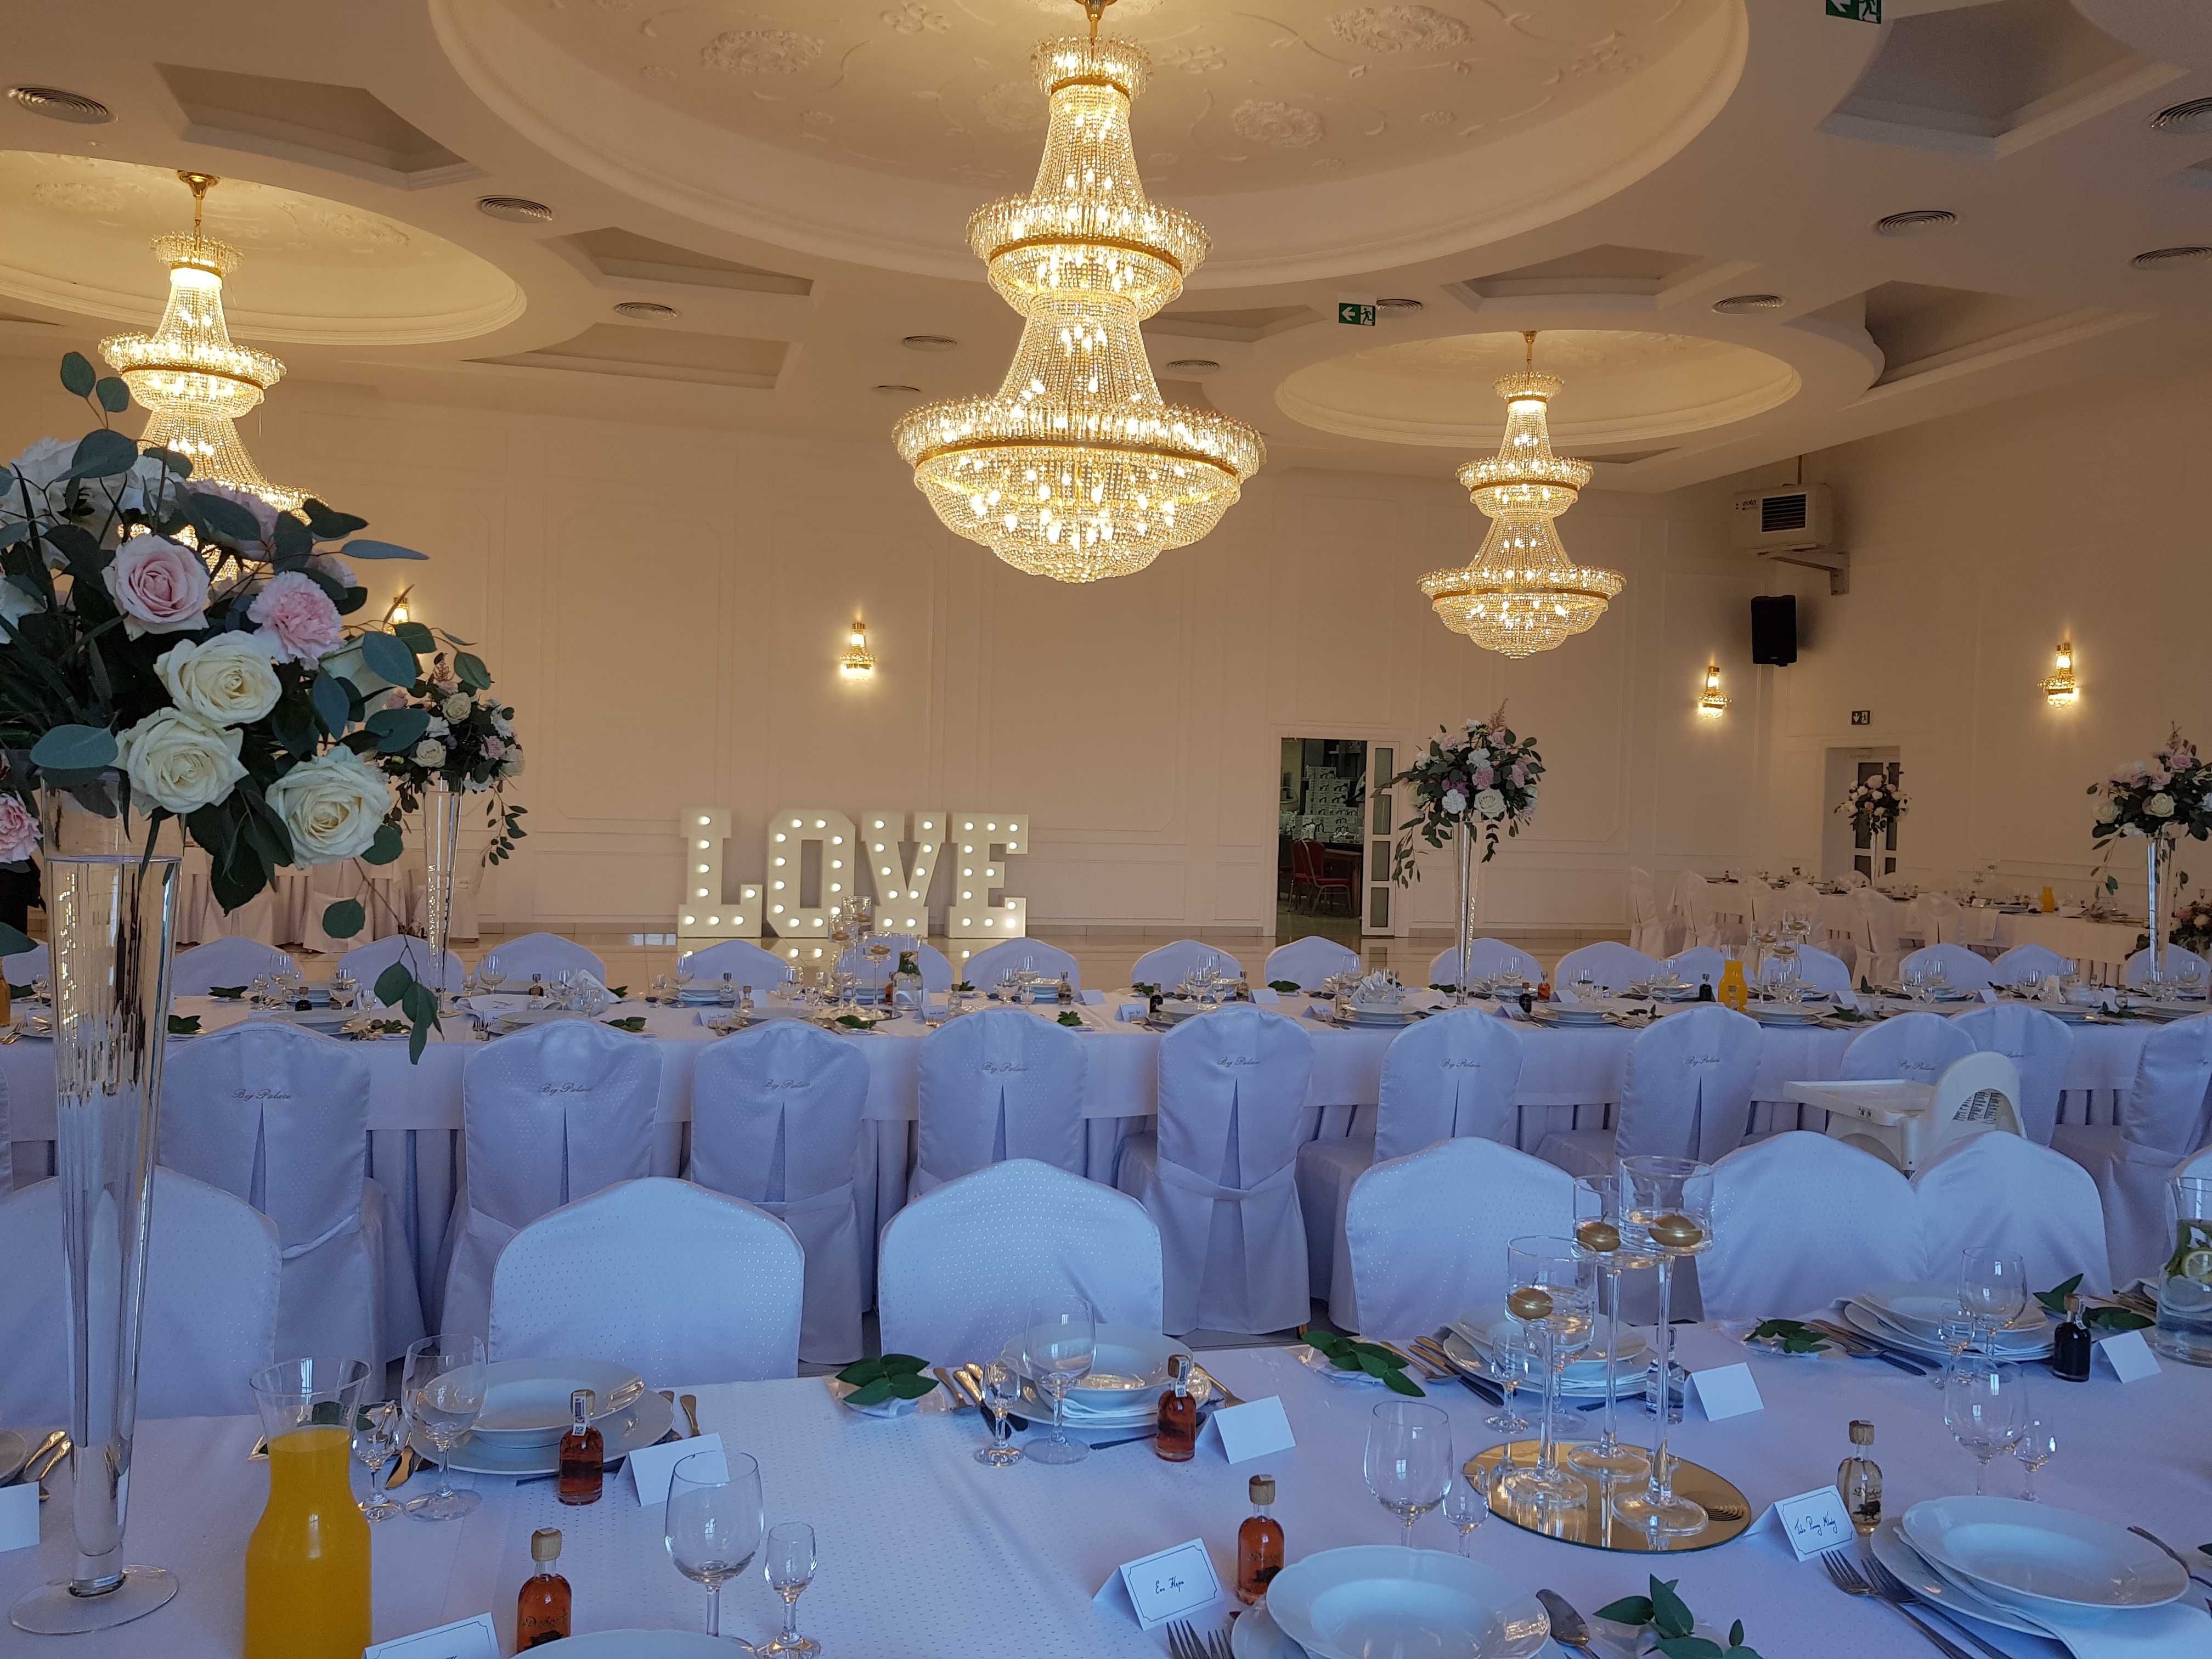 Napis LOVE podświetlany napis 3D LED ledowy ślub sesja wesele Wynajem